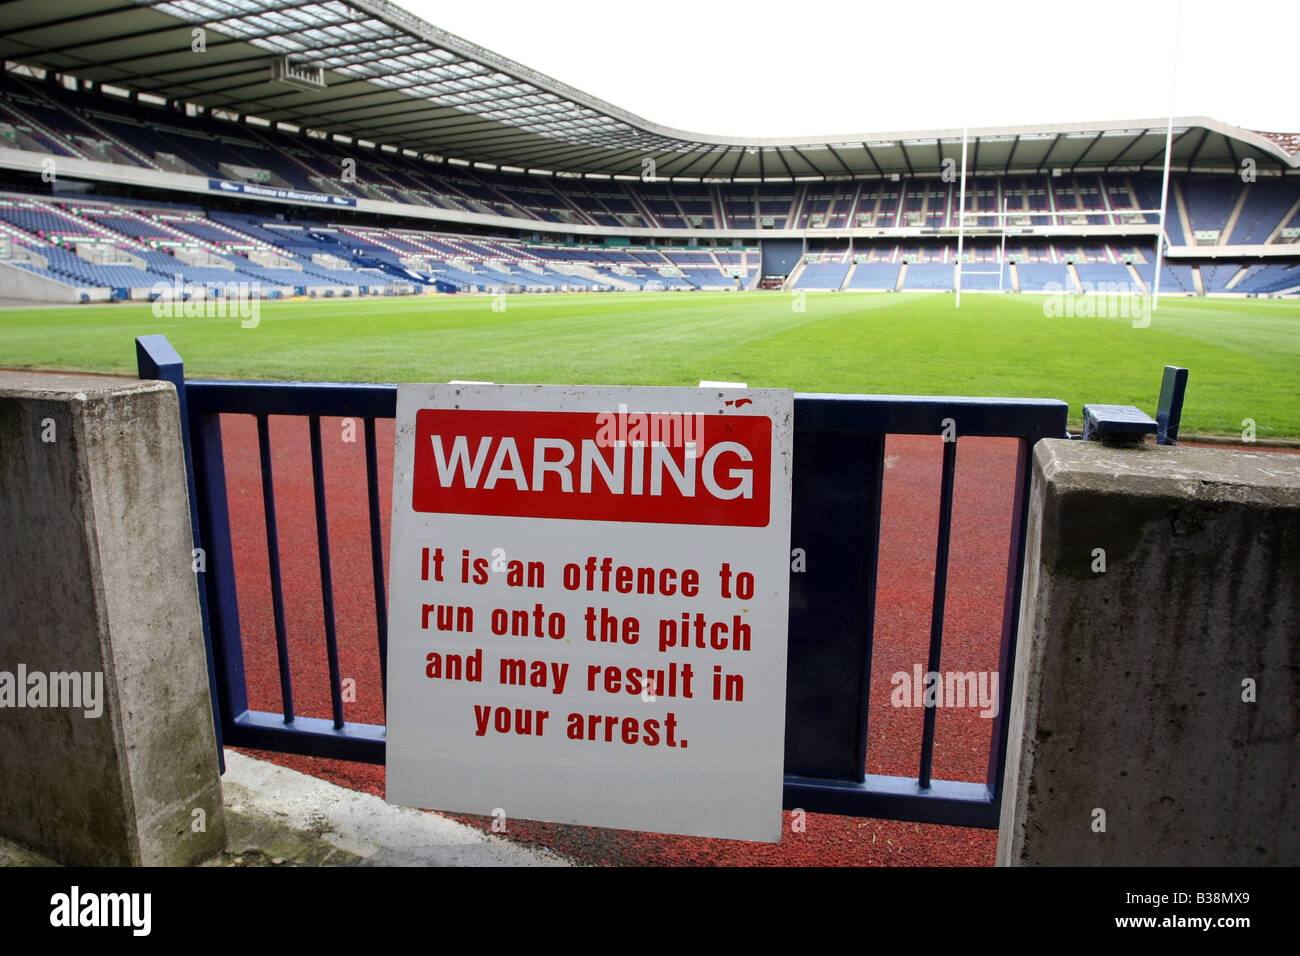 Melden Sie sich im Murrayfield Stadium in Edinburgh, Schottland, UK, Warnung Fans nicht auf das Spielfeld zu laufen, wie sie Verhaftung droht Stockfoto